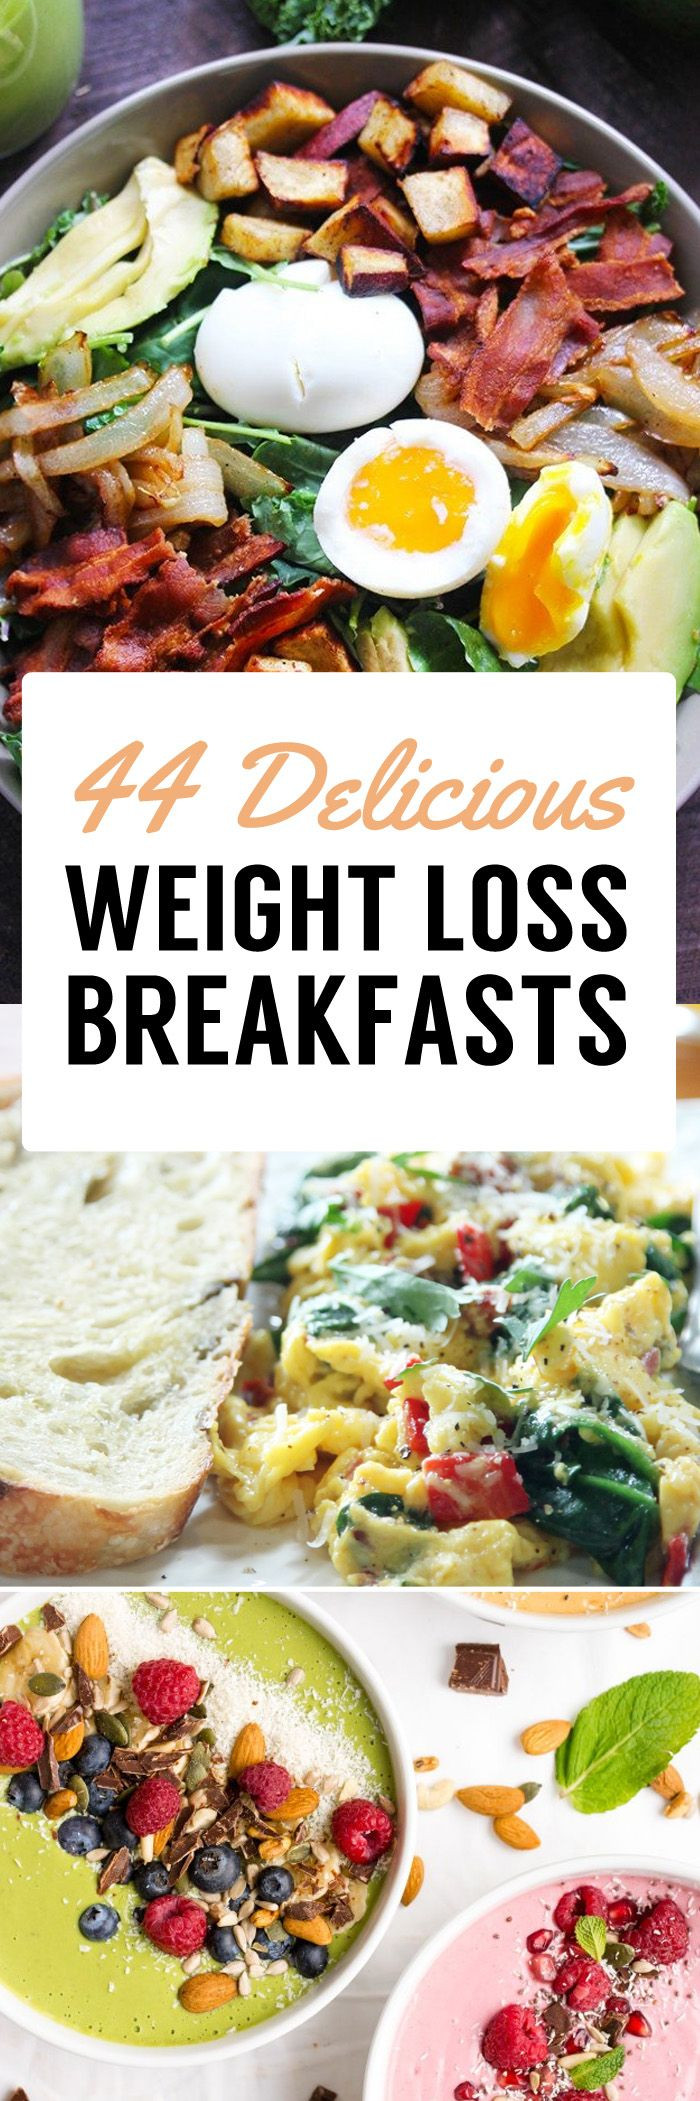 Healthy Breakfast Foods For Weight Loss
 Best 25 Healthy breakfasts ideas on Pinterest